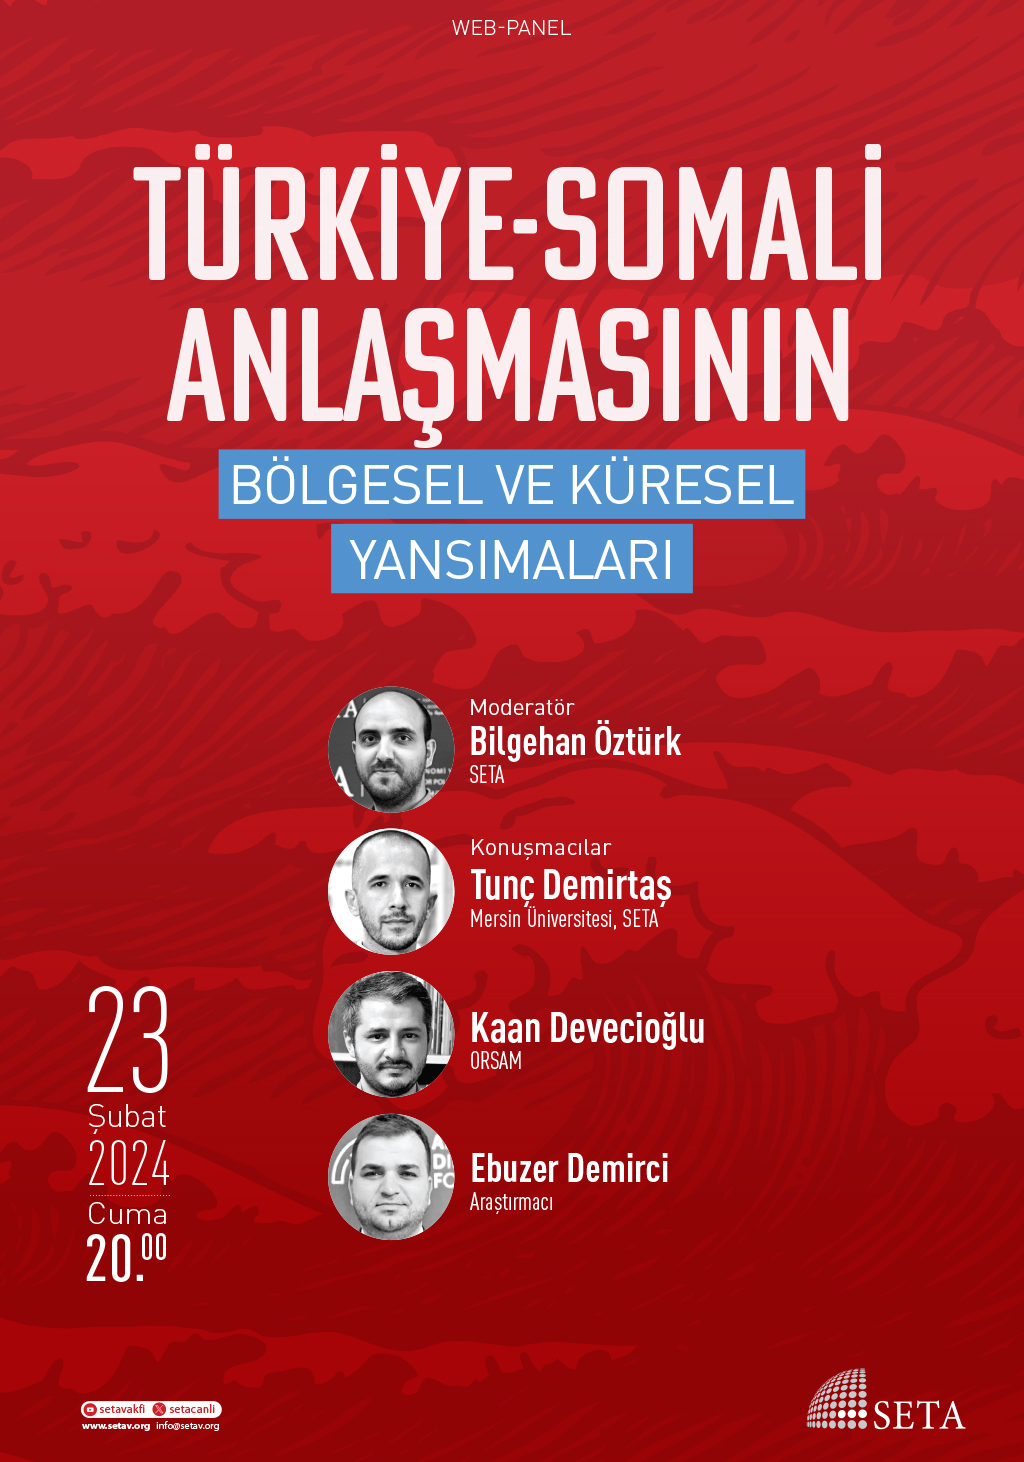 Web Panel: Türkiye-Somali Anlaşmasının Bölgesel ve Küresel Yansımaları